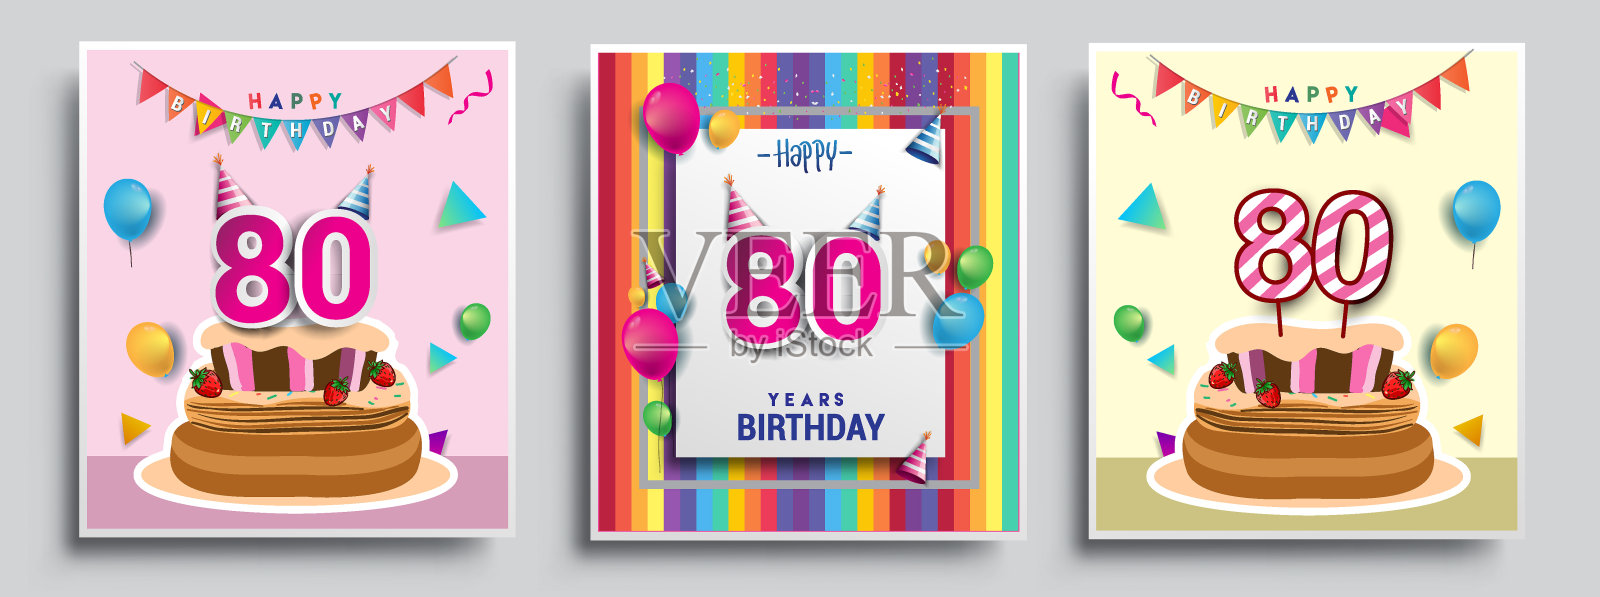 矢量组生日邀请，贺卡设计，与五彩纸屑和气球，生日蛋糕，彩色矢量模板元素为您的生日庆祝会。插画图片素材